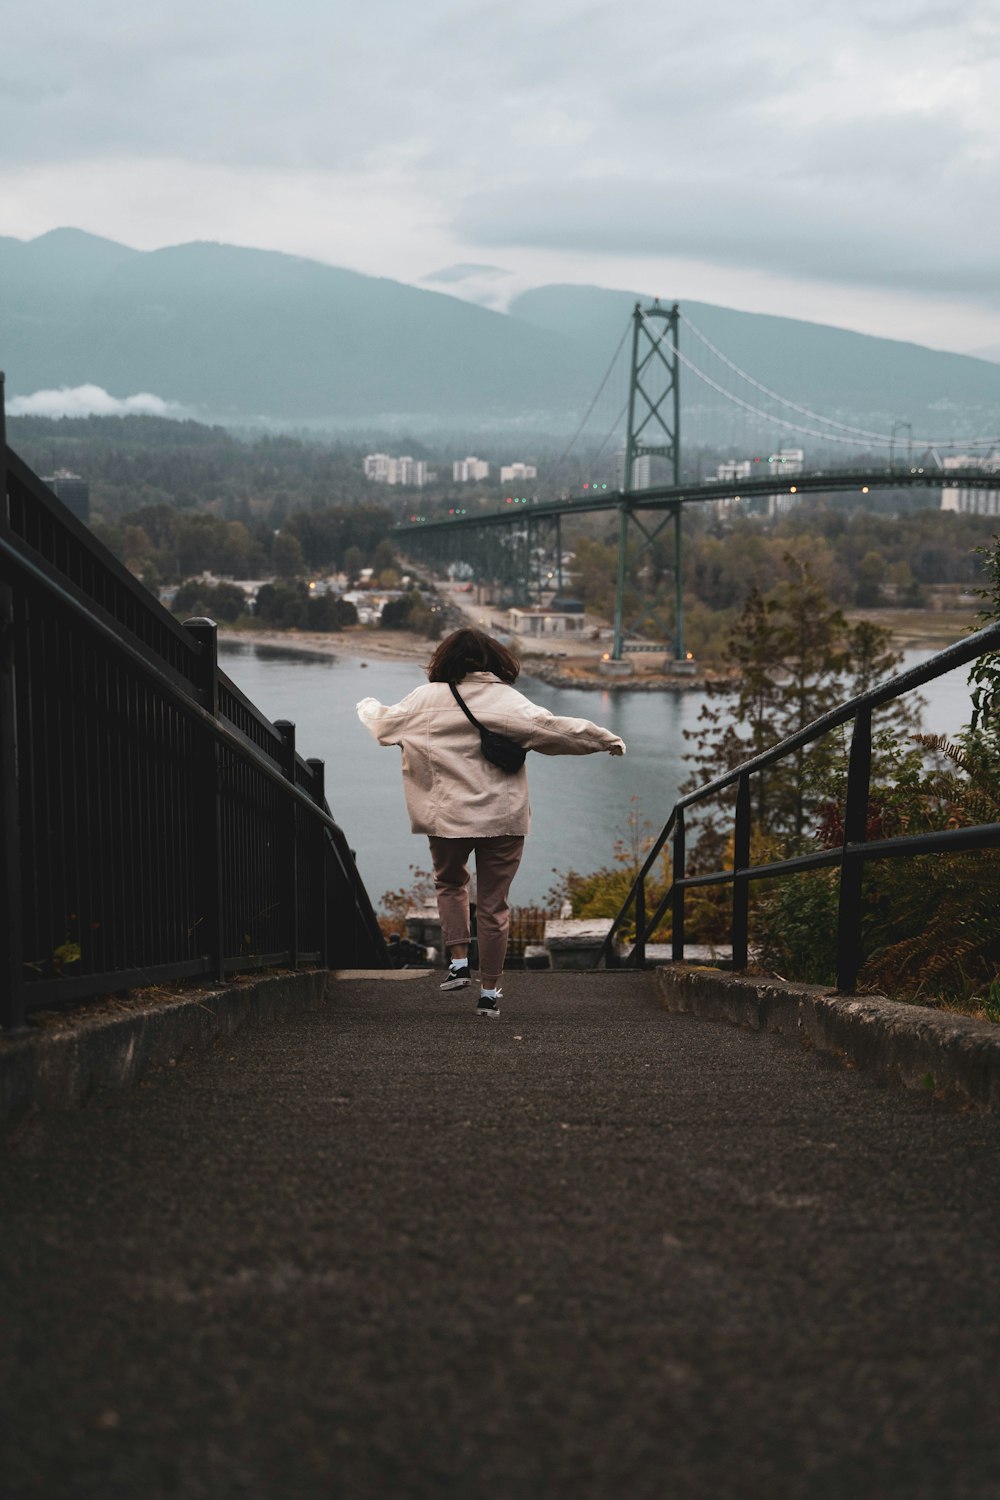 a person is walking down a path near a bridge